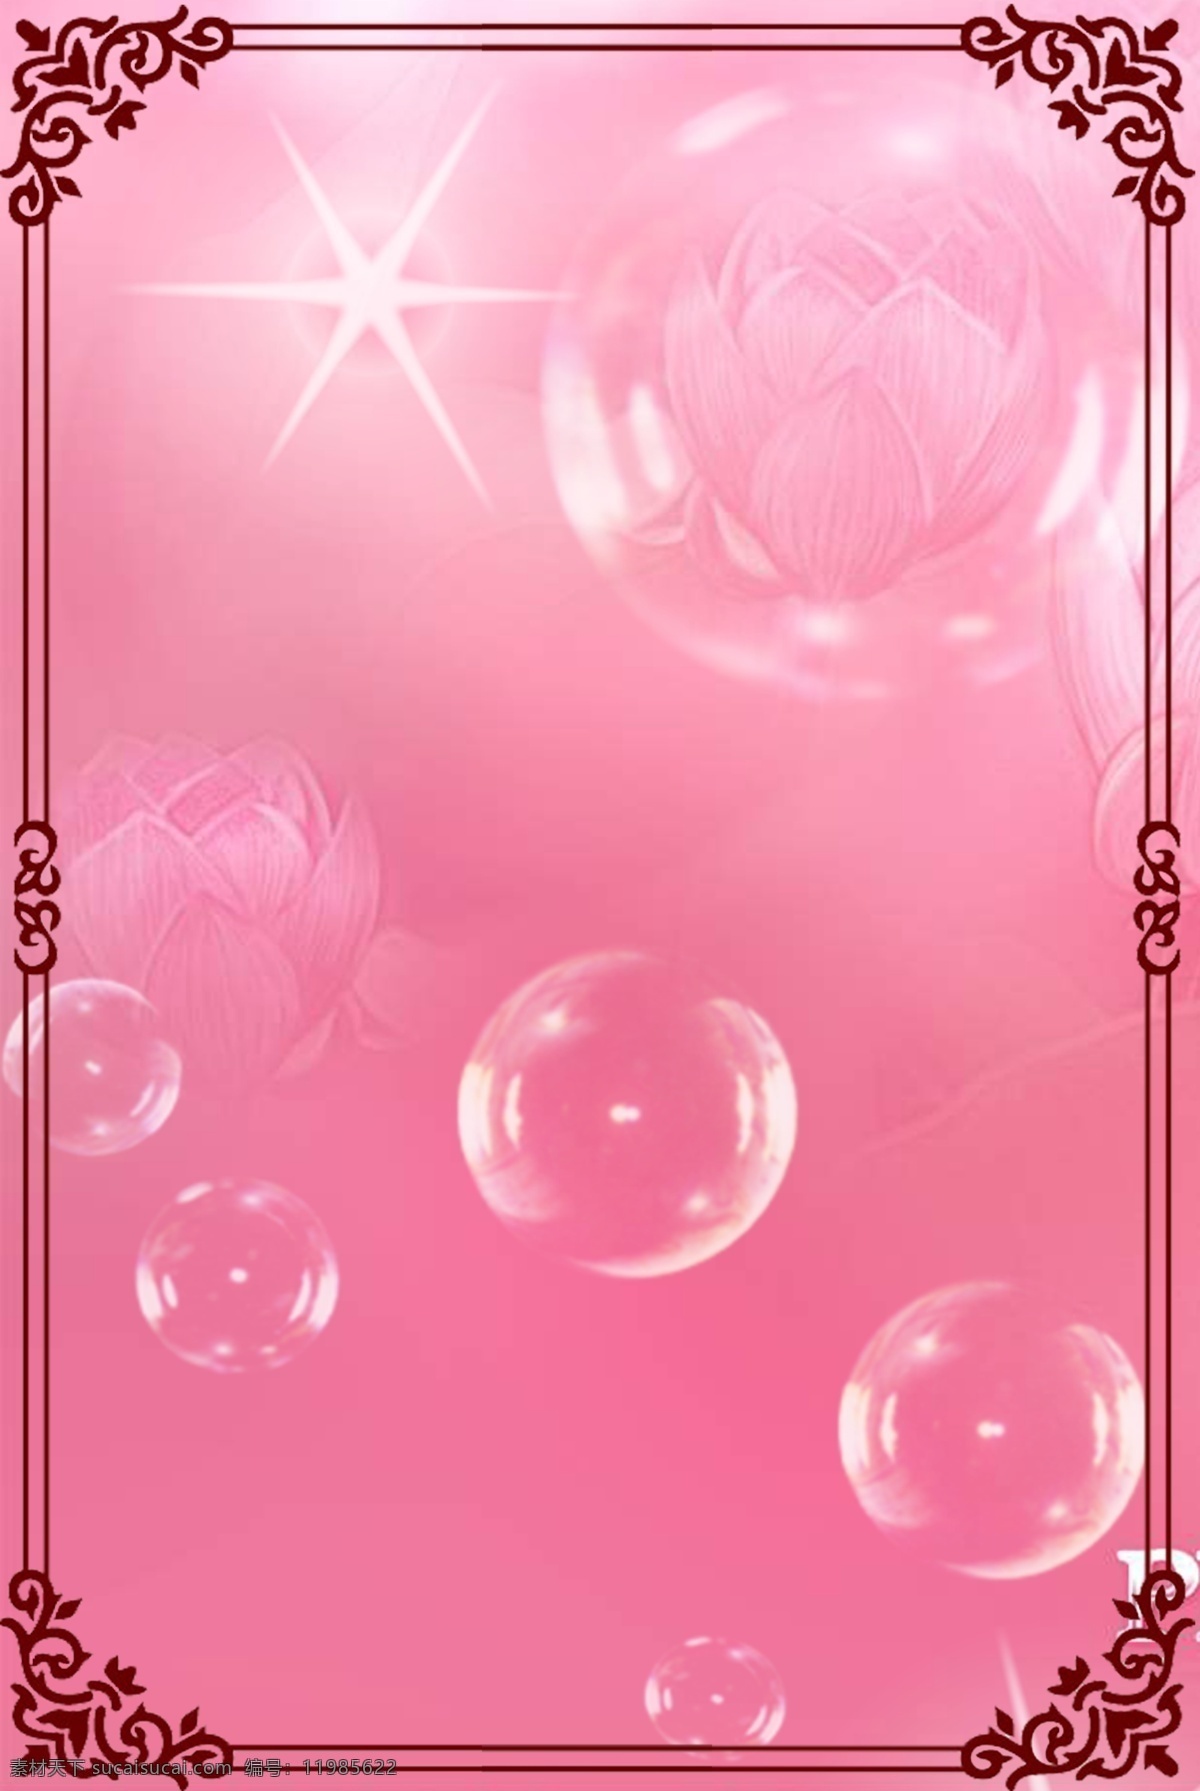 粉色底图展板 粉色底图 褐色花边 气泡 光芒万丈 莲花 展板模板 广告设计模板 源文件